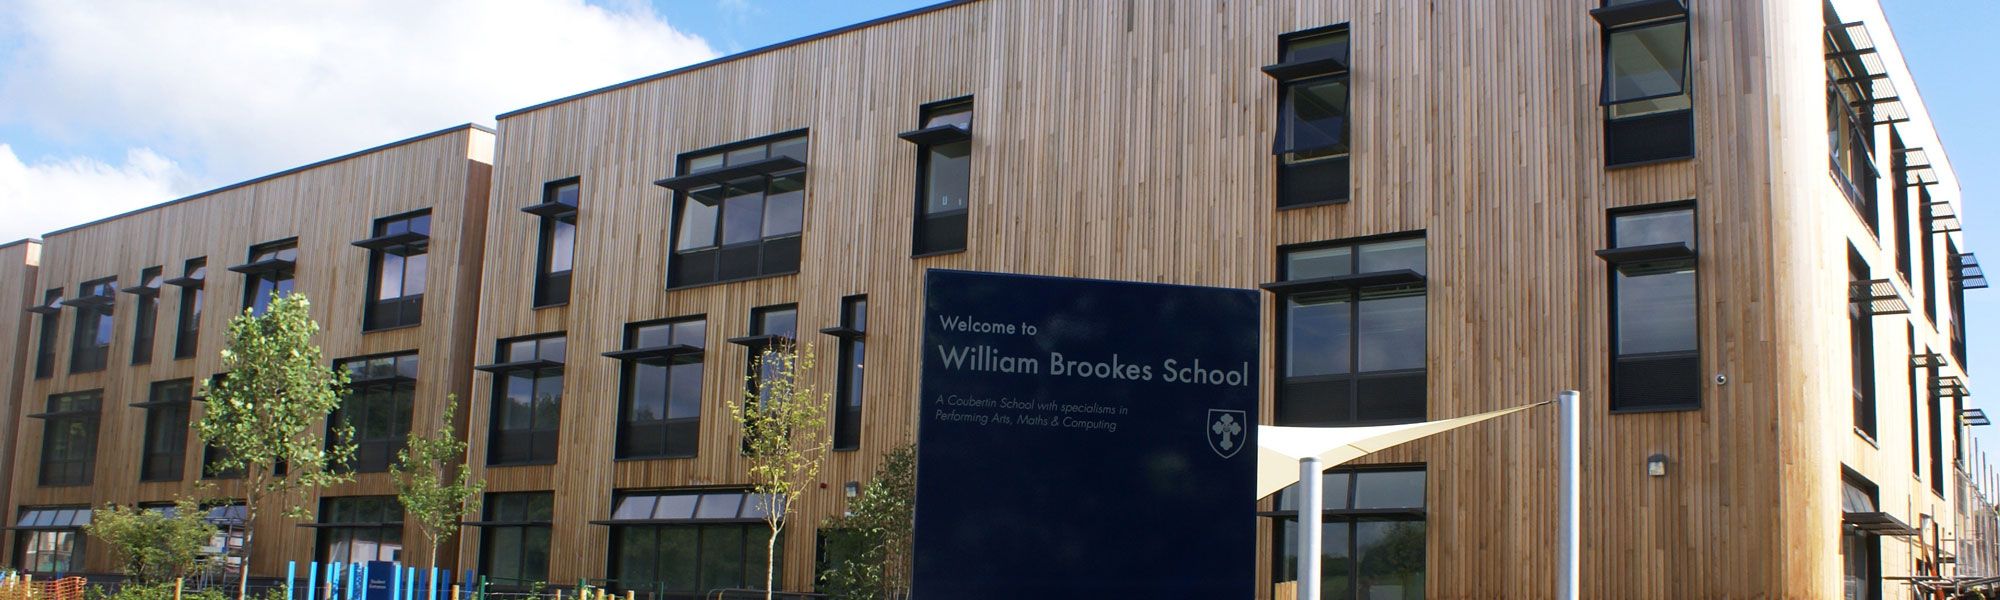 William Brookes School in Much Wenlock, Shropshire